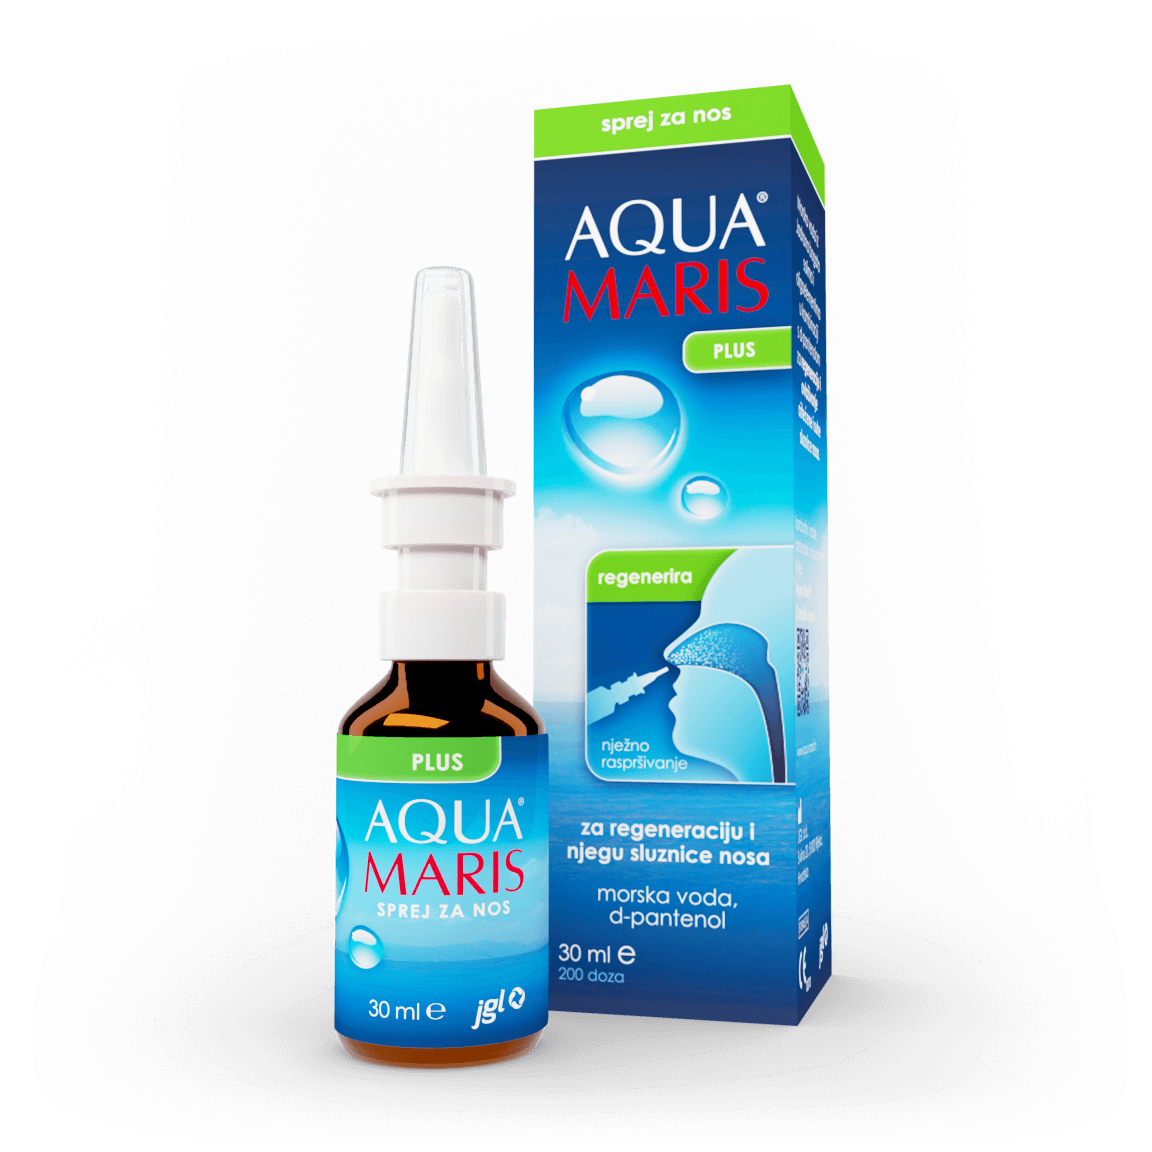 Aqua Maris Plus